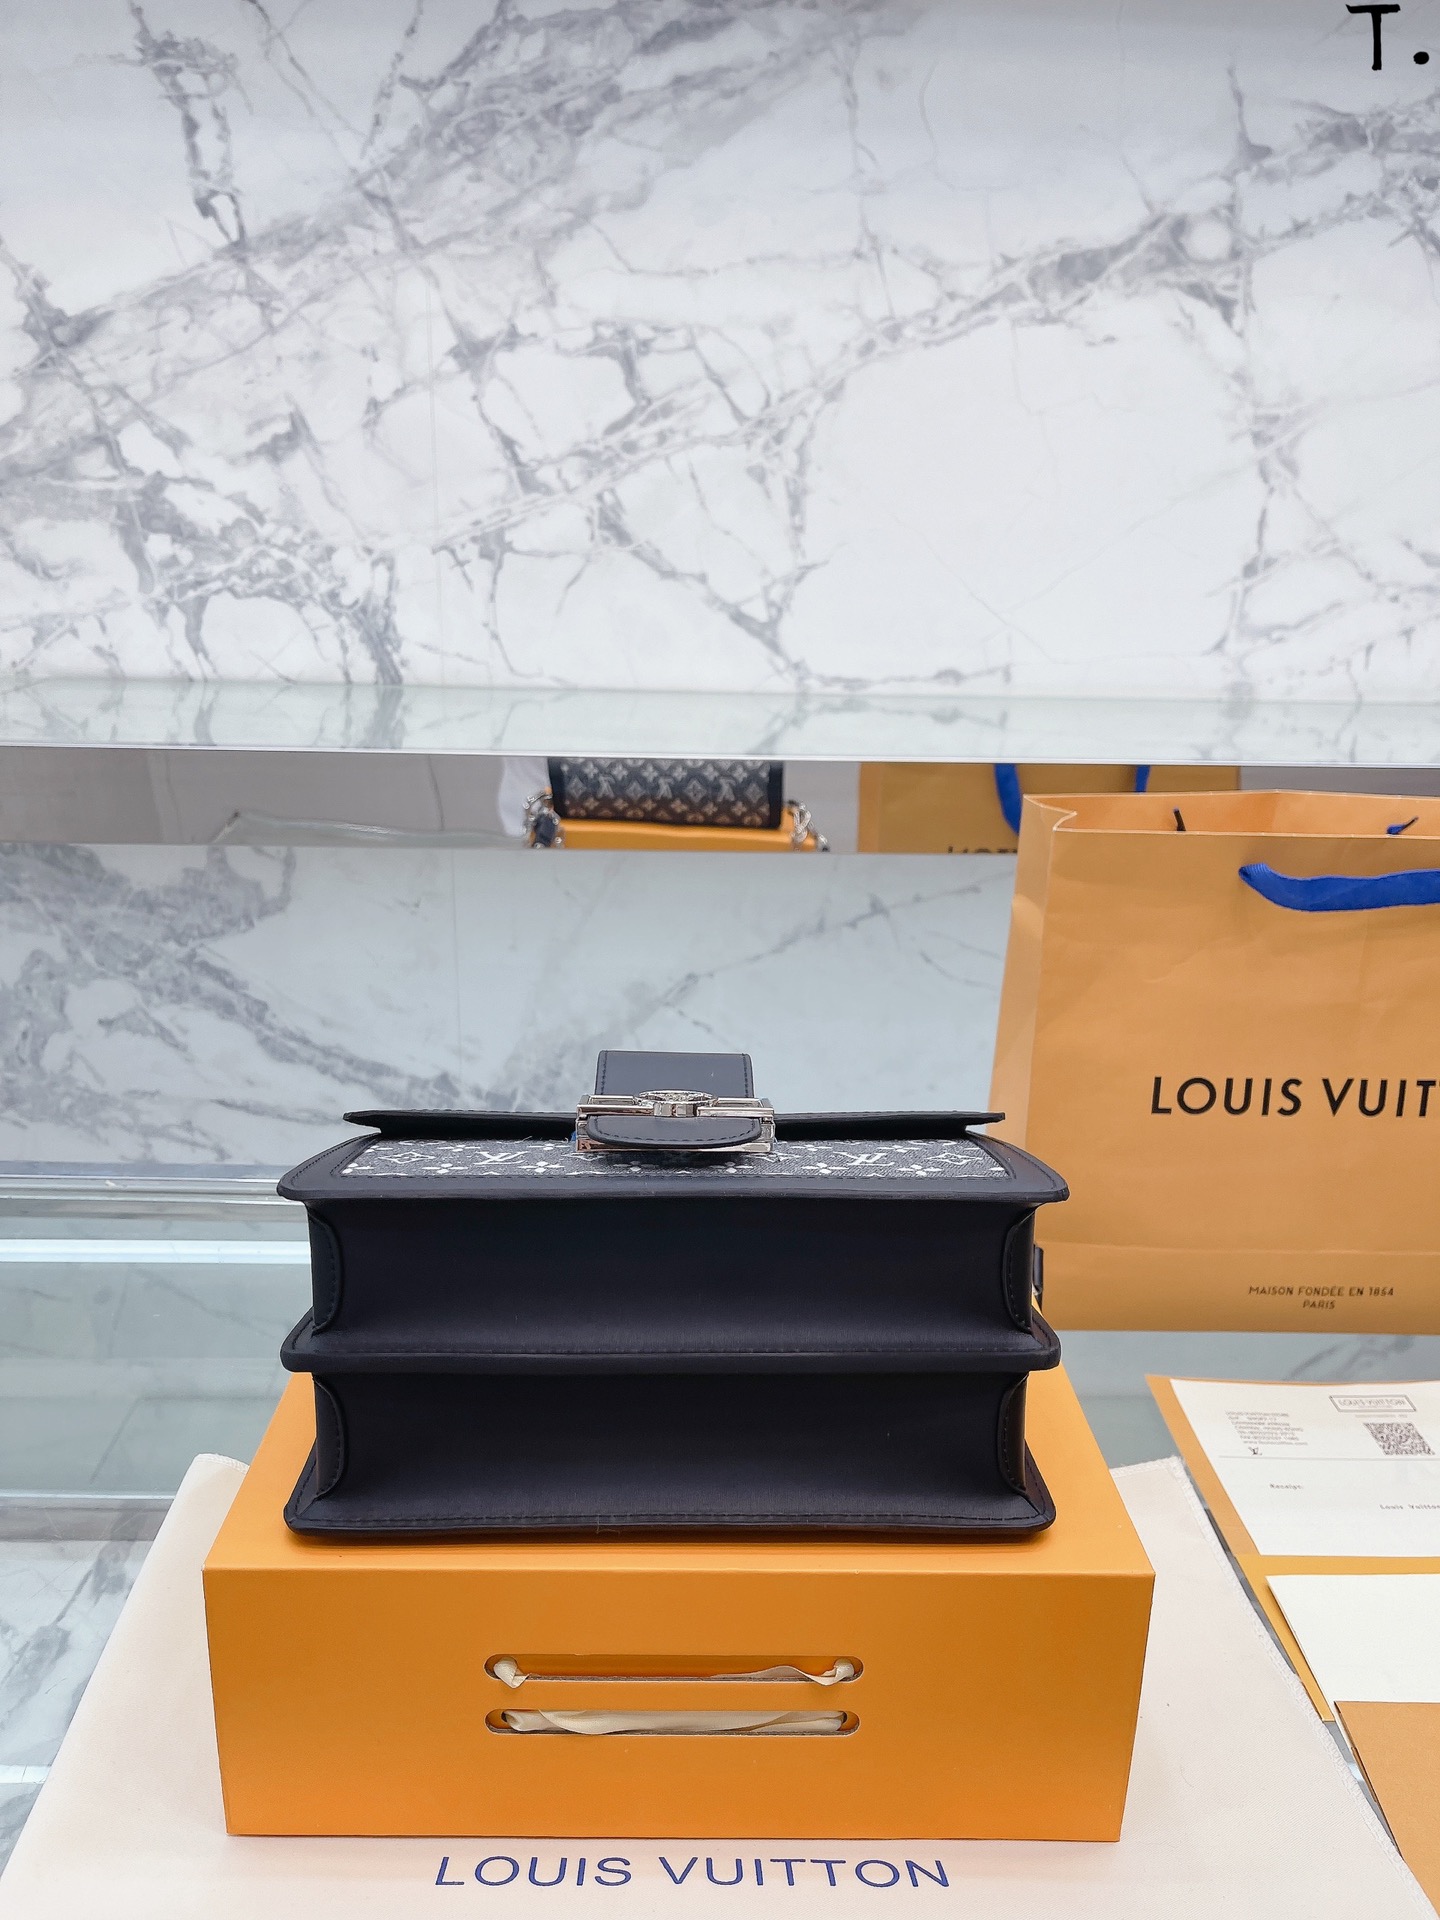 Replica Louis Vuitton LOOP Bag Monogram Jacquard Denim M21752 for Sale